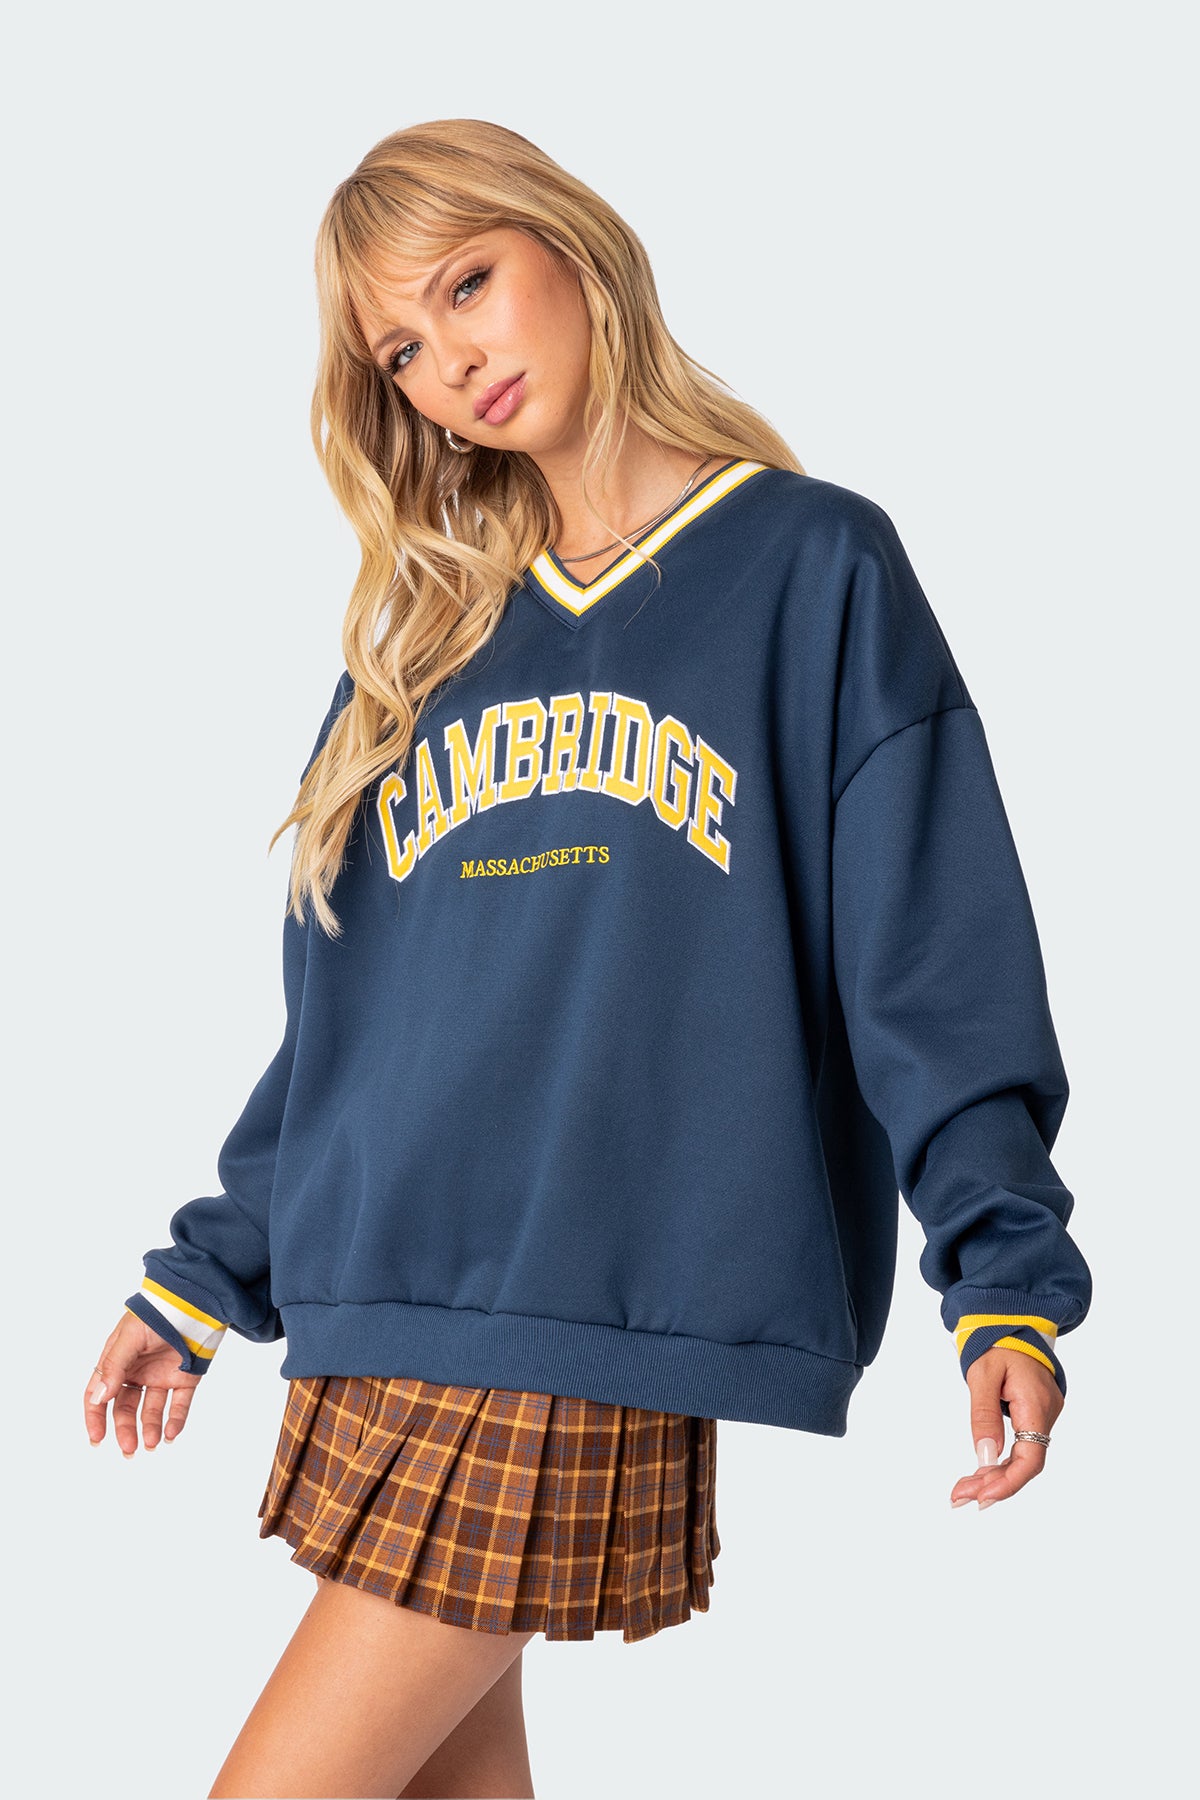 Cambridge Sweatshirt